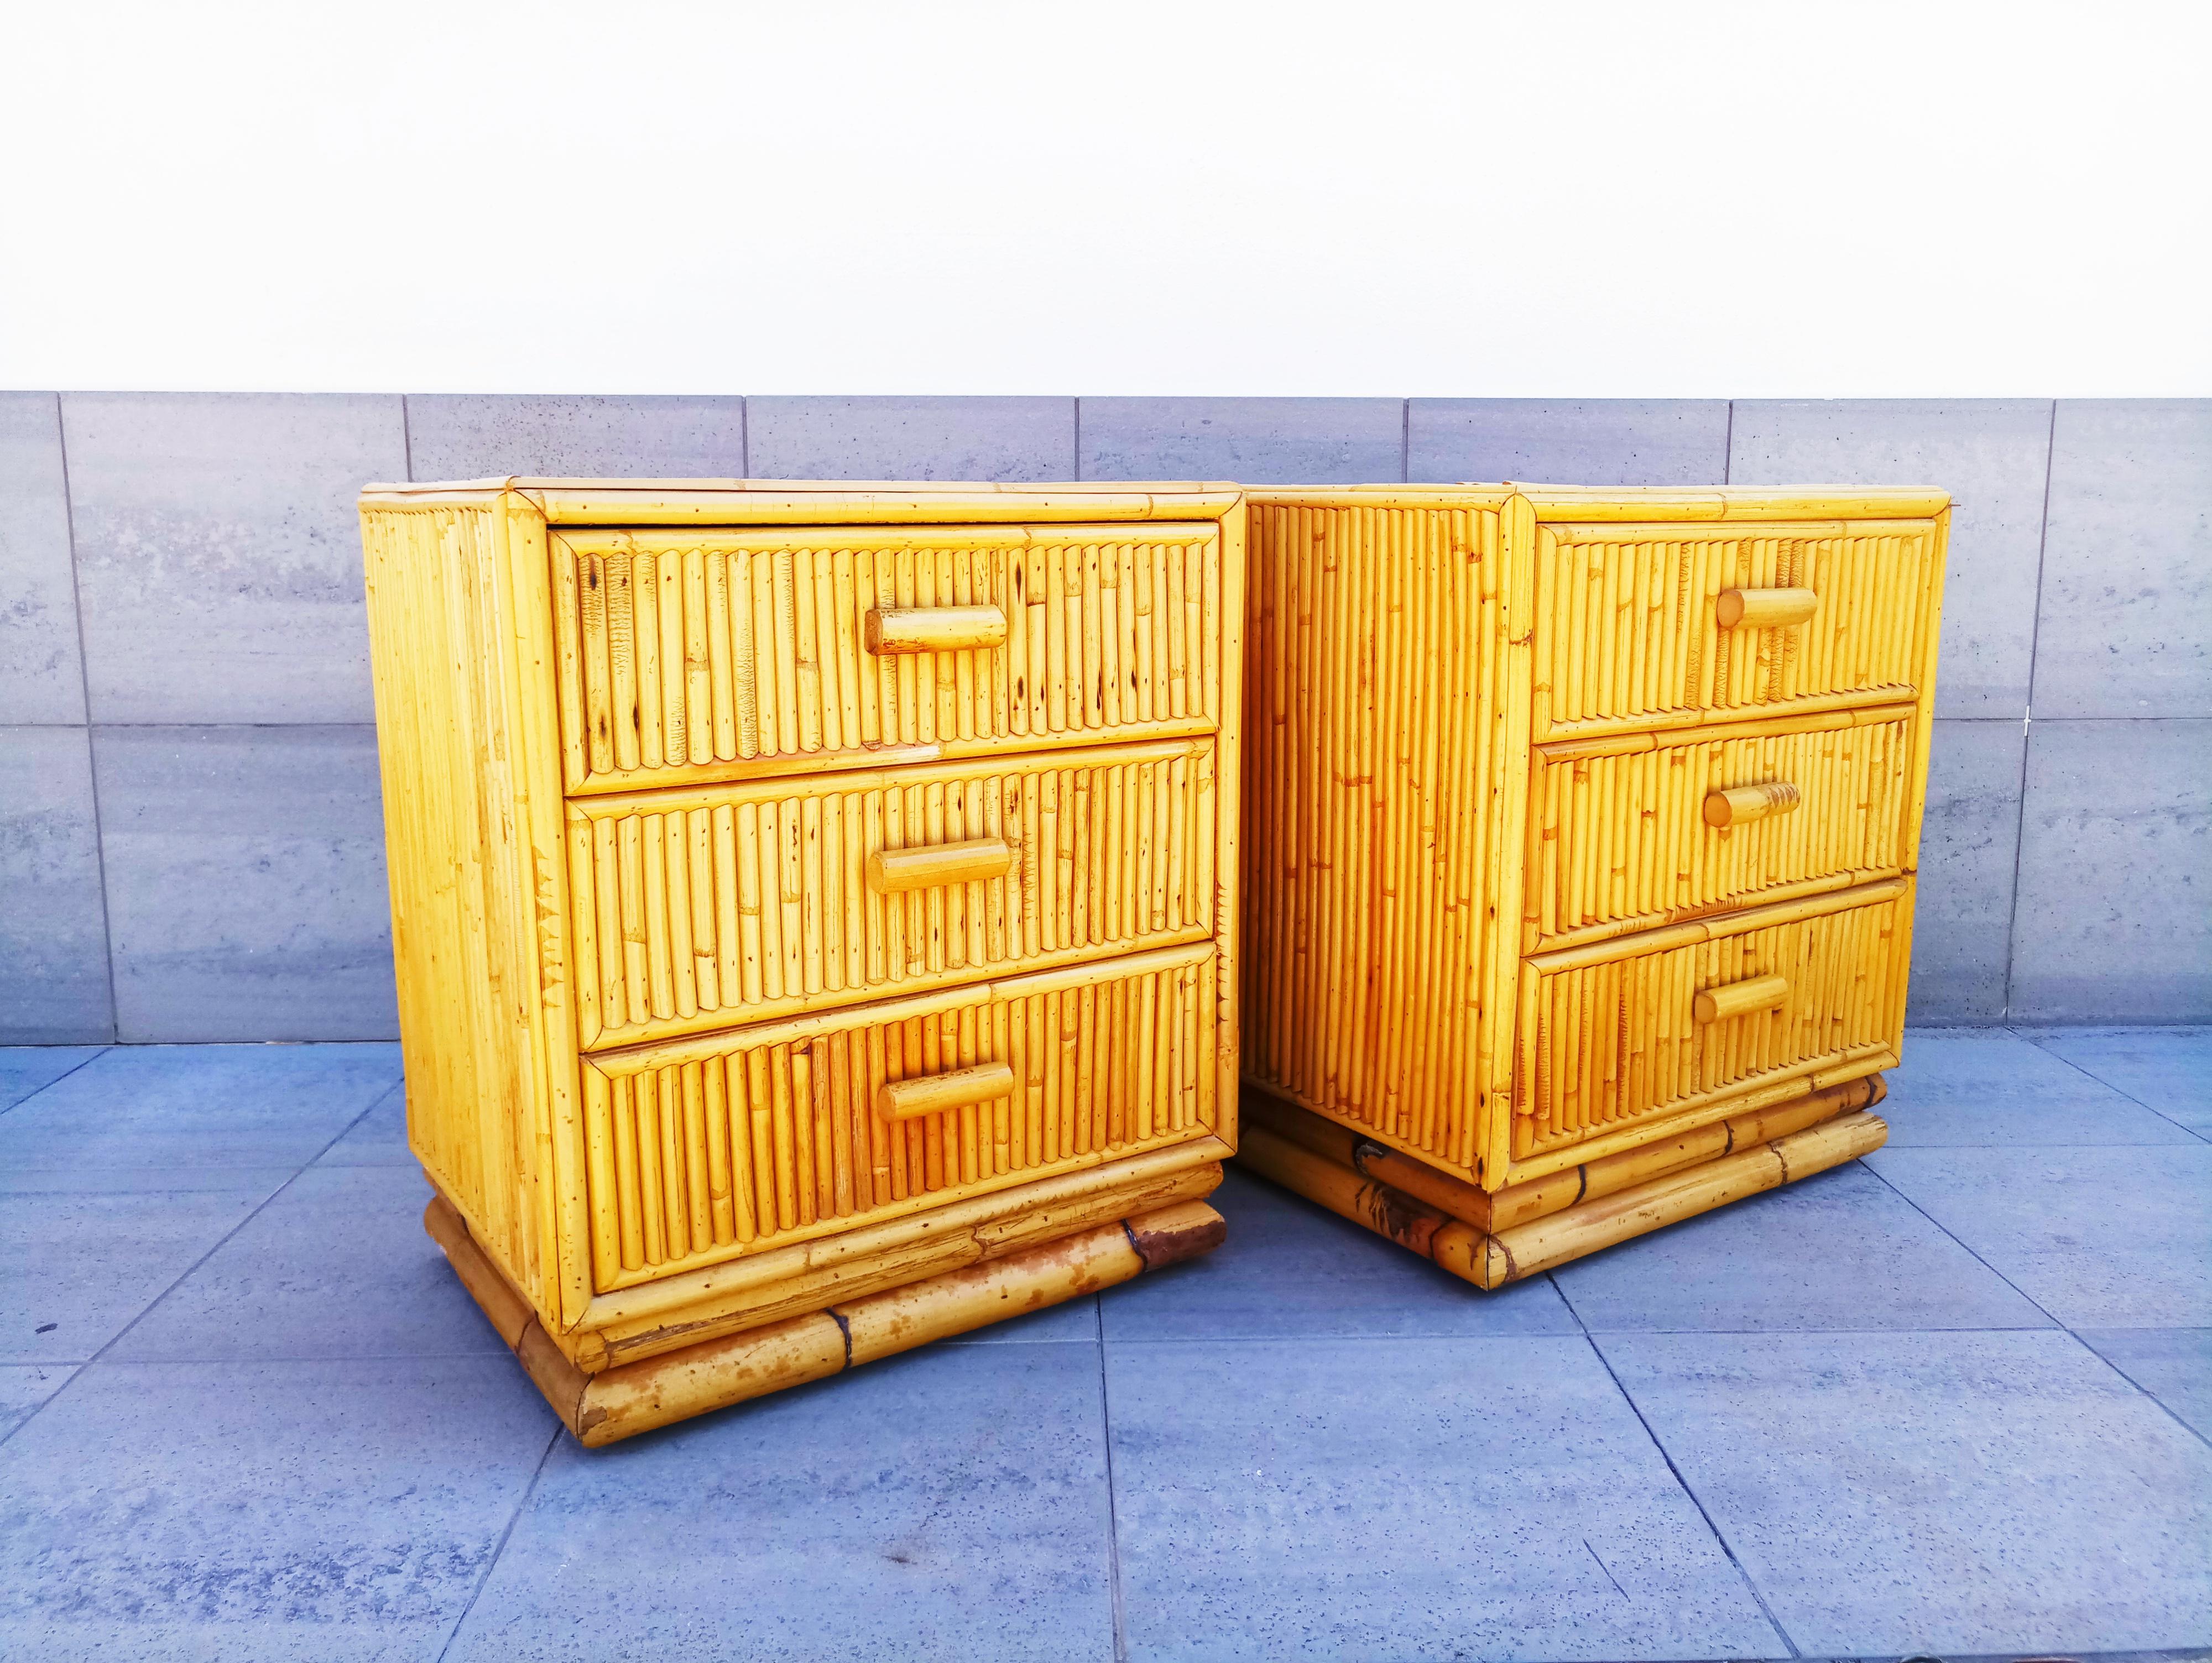 Schönes Paar Bambus-Endtische oder Nachttische in den 1960er Jahren hergestellt.
Abmessungen: (cm) 46 B x 35 T x 53 H.